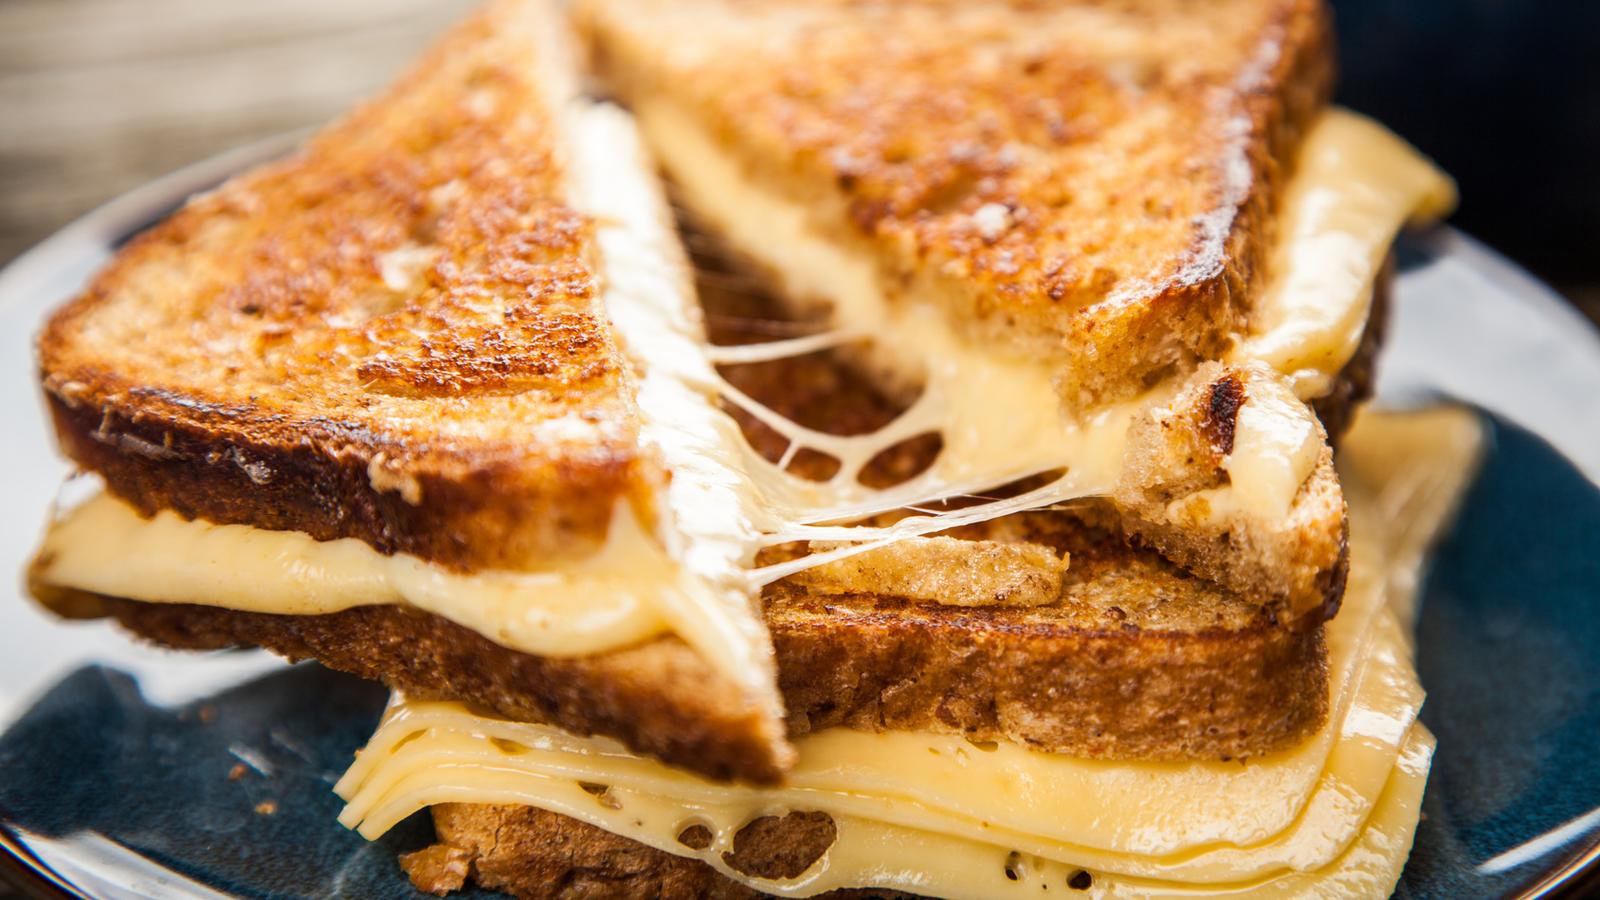 Remplacez le beurre pas de la mayonnaise la prochaine fois que vous faites des grilled cheese